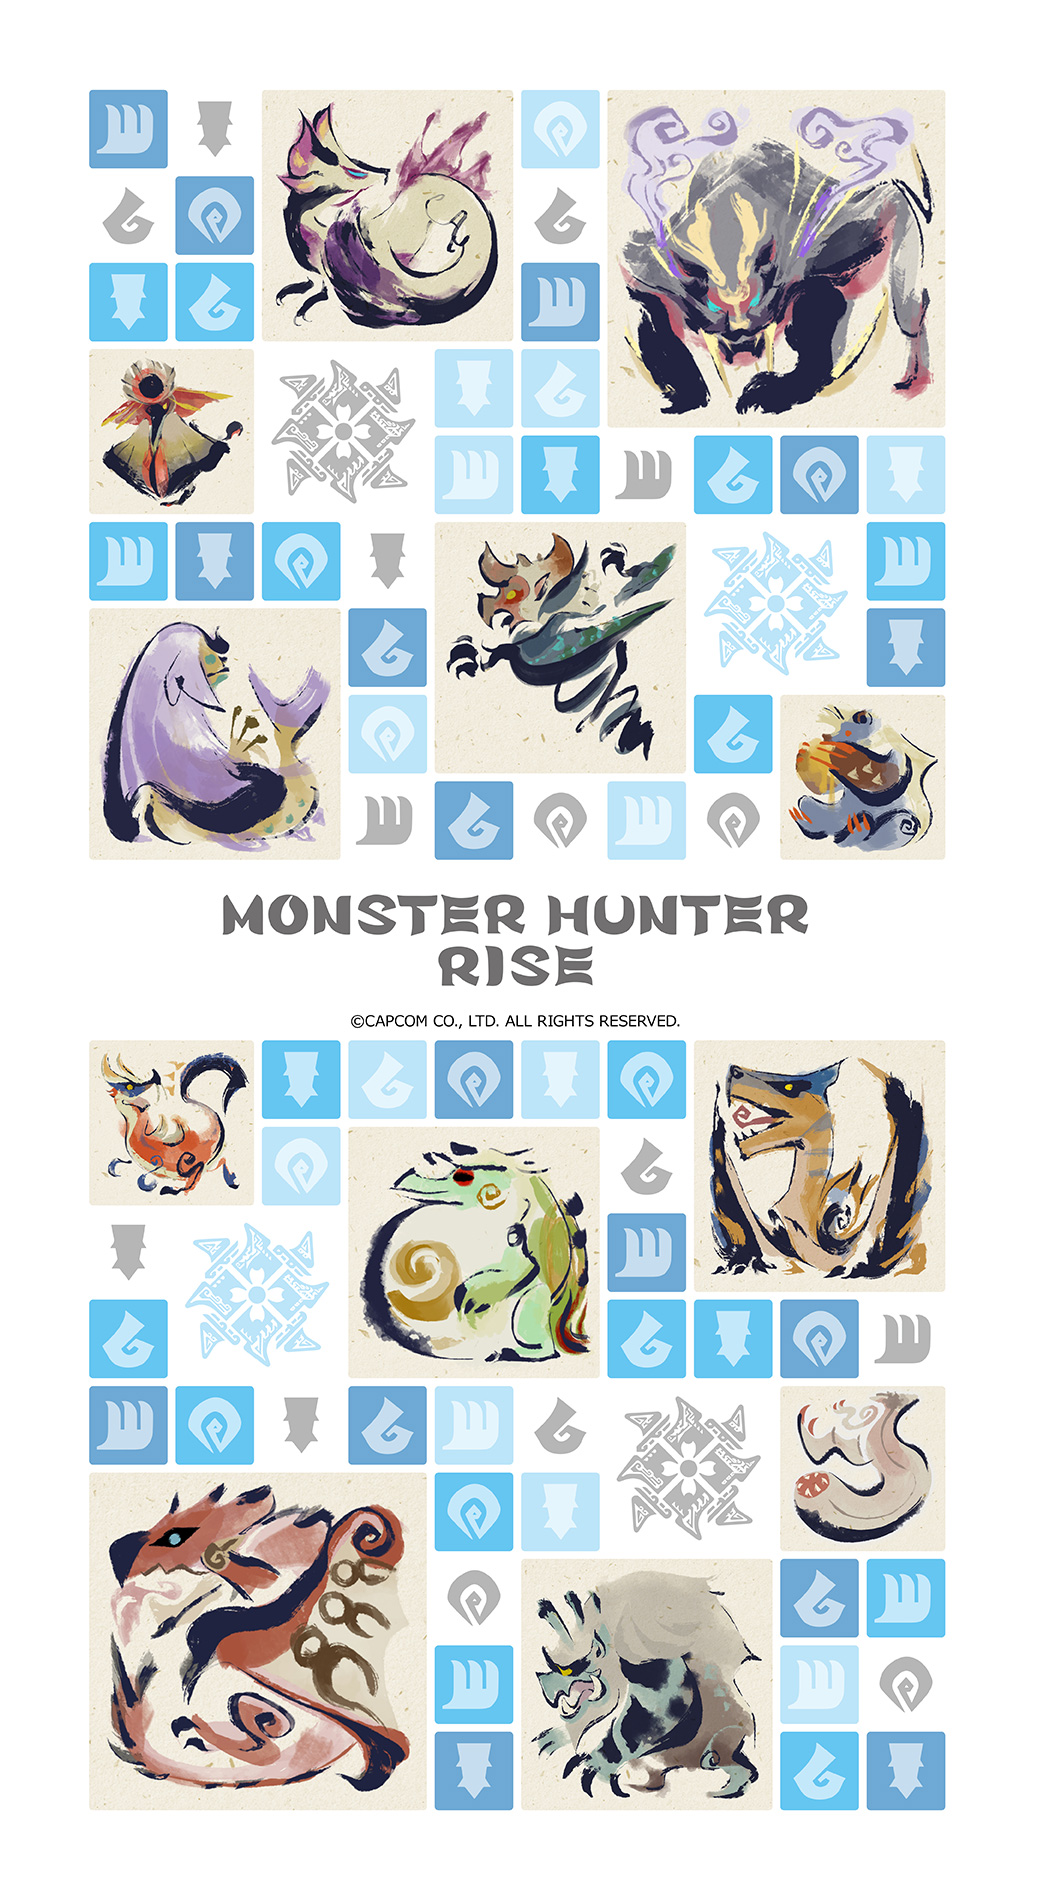 Monster Hunter Asia Capcom